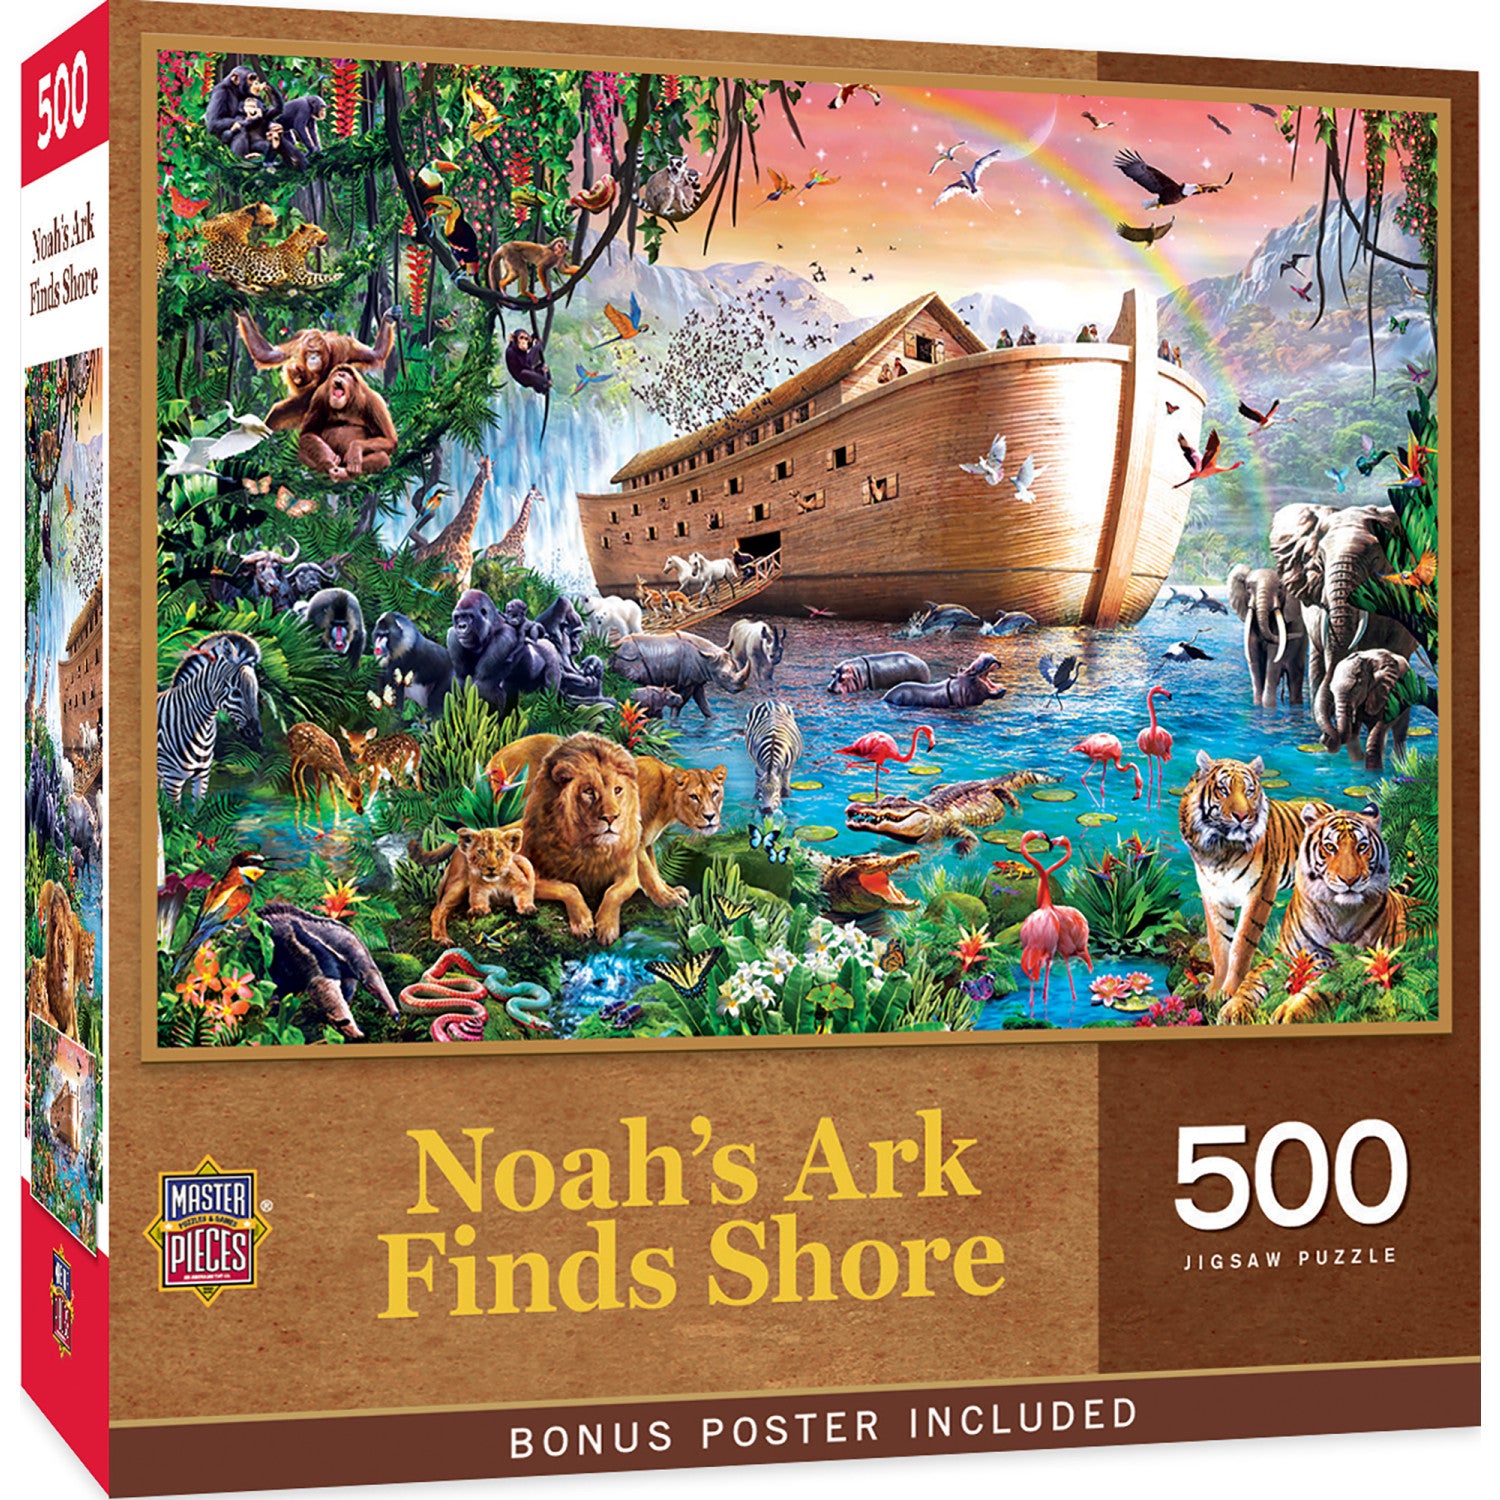 Noah's Ark Finds Shore 500 Piece Jigsaw Puzzle